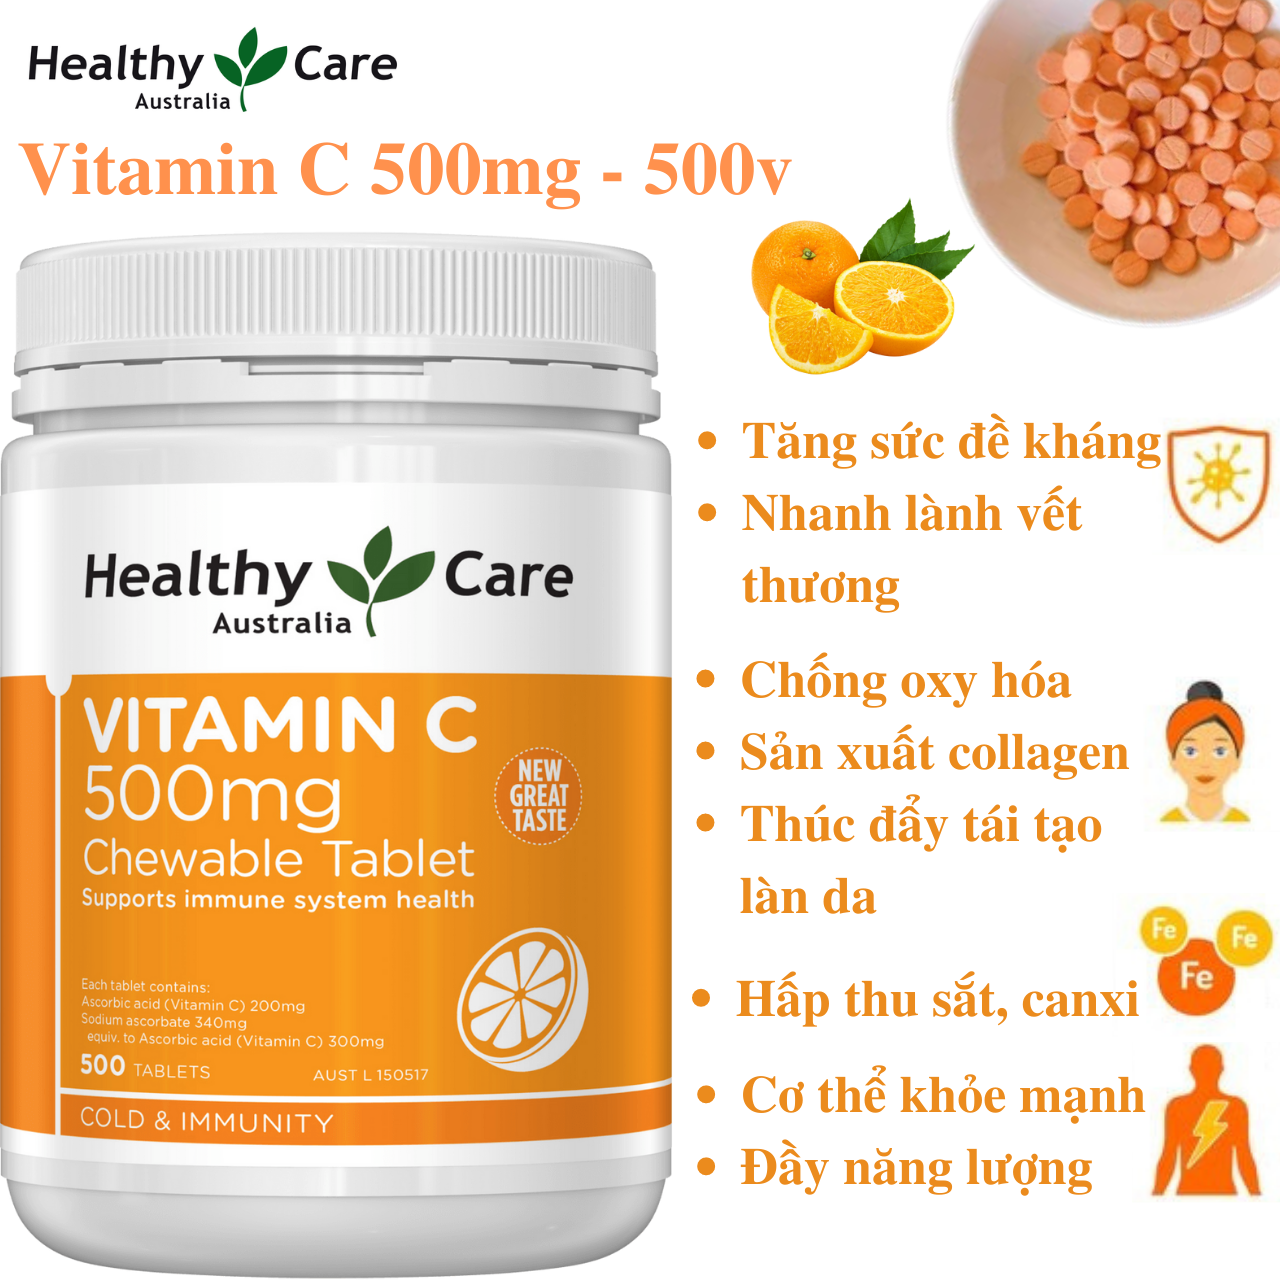 Vitamin C dạng kẹo (ngậm) Úc Healthy Care tăng sức đề kháng, sáng da, tăng sản xuất collagen, nhanh lành bệnh (vết thương) - Massel Official